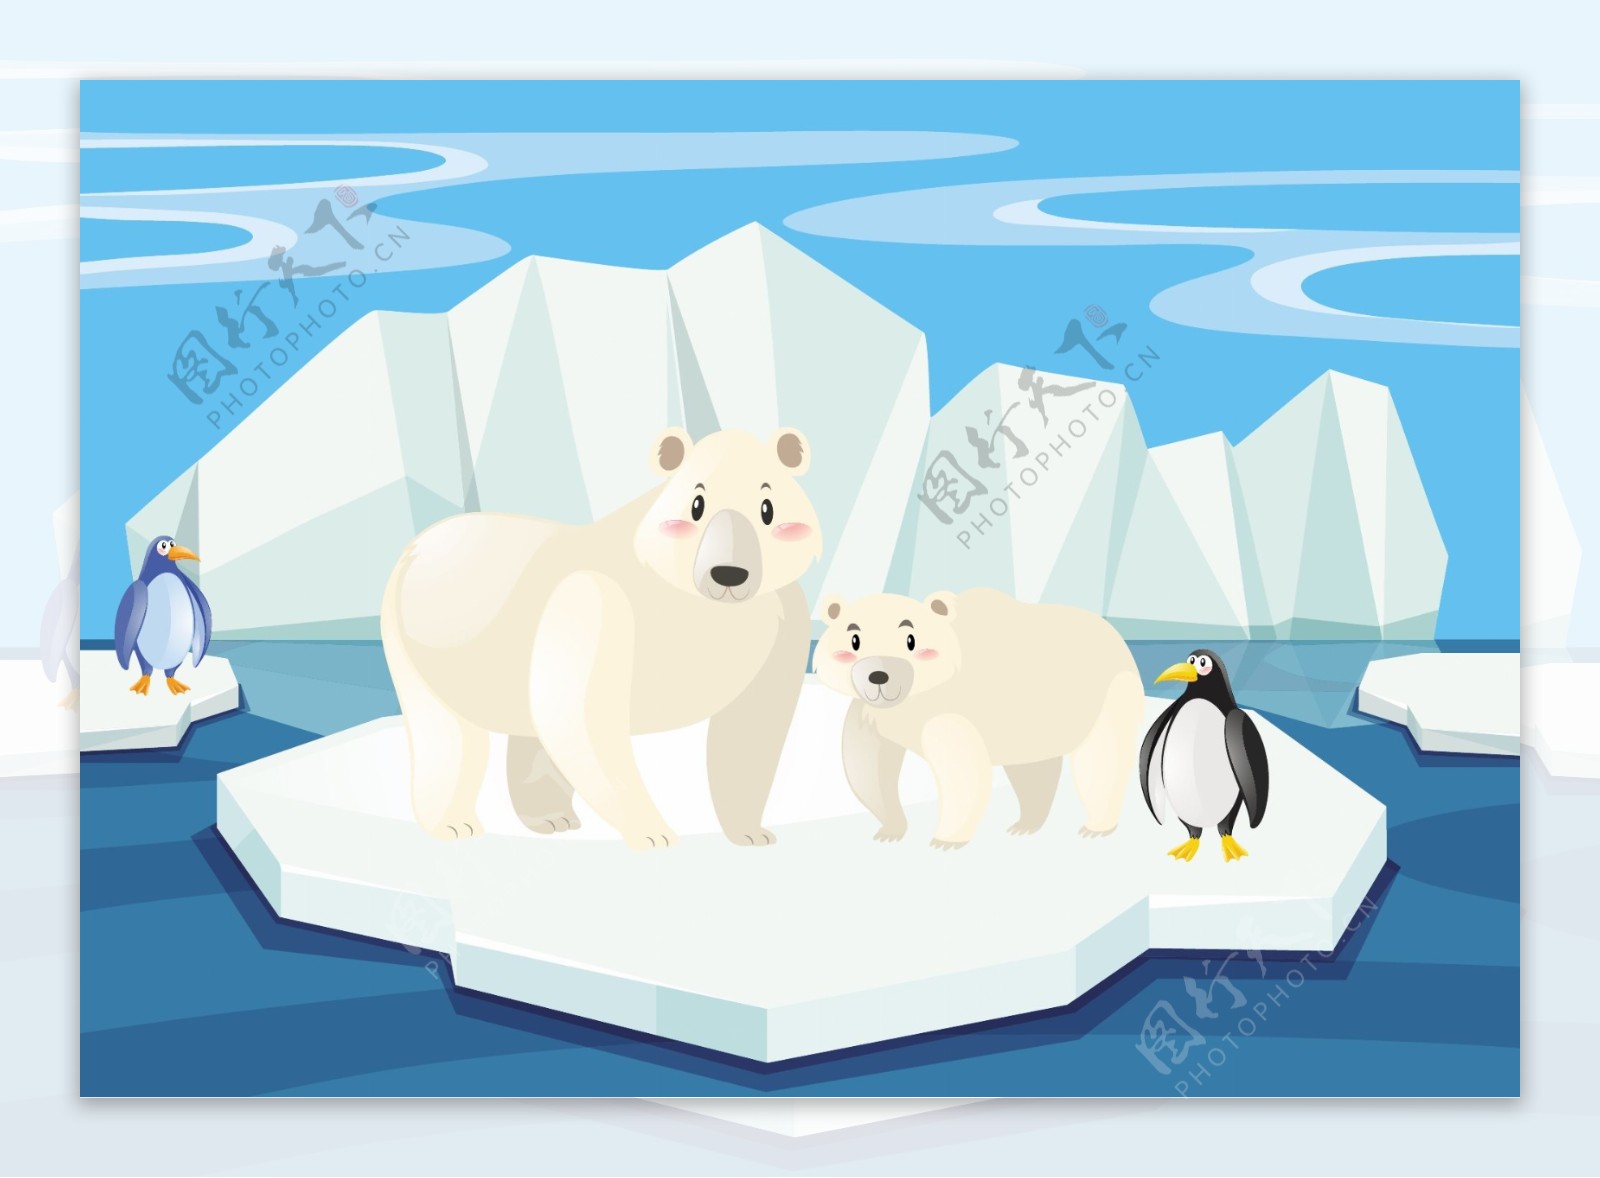 冰山上的北极熊和企鹅的场景